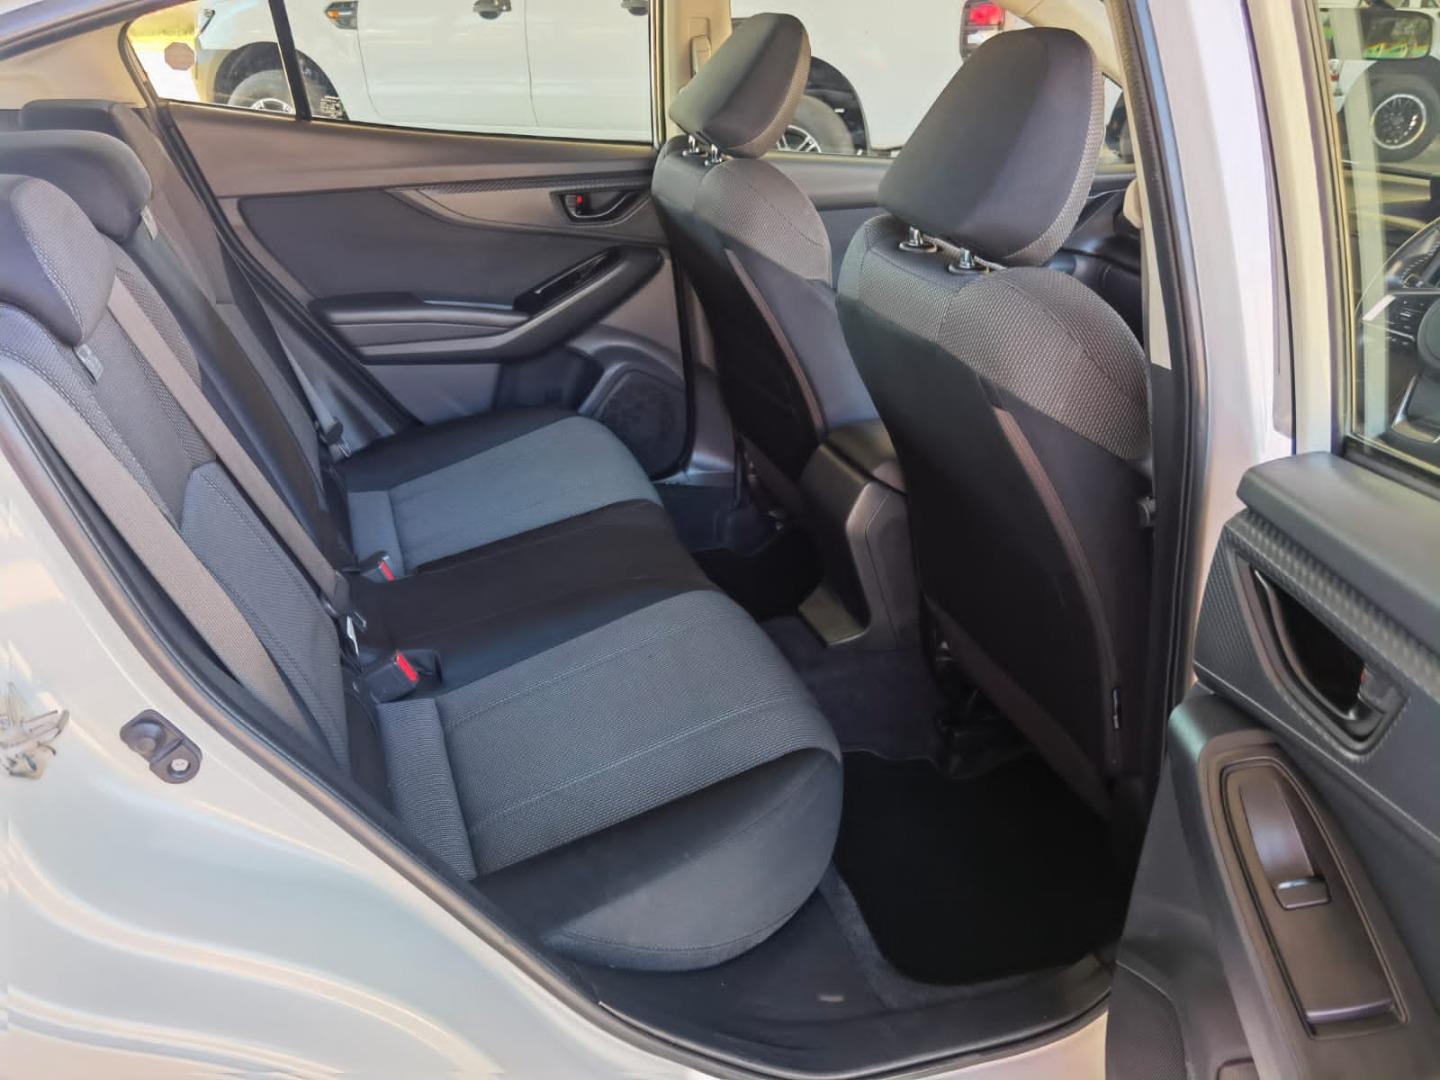 2019 Subaru Impreza second row 